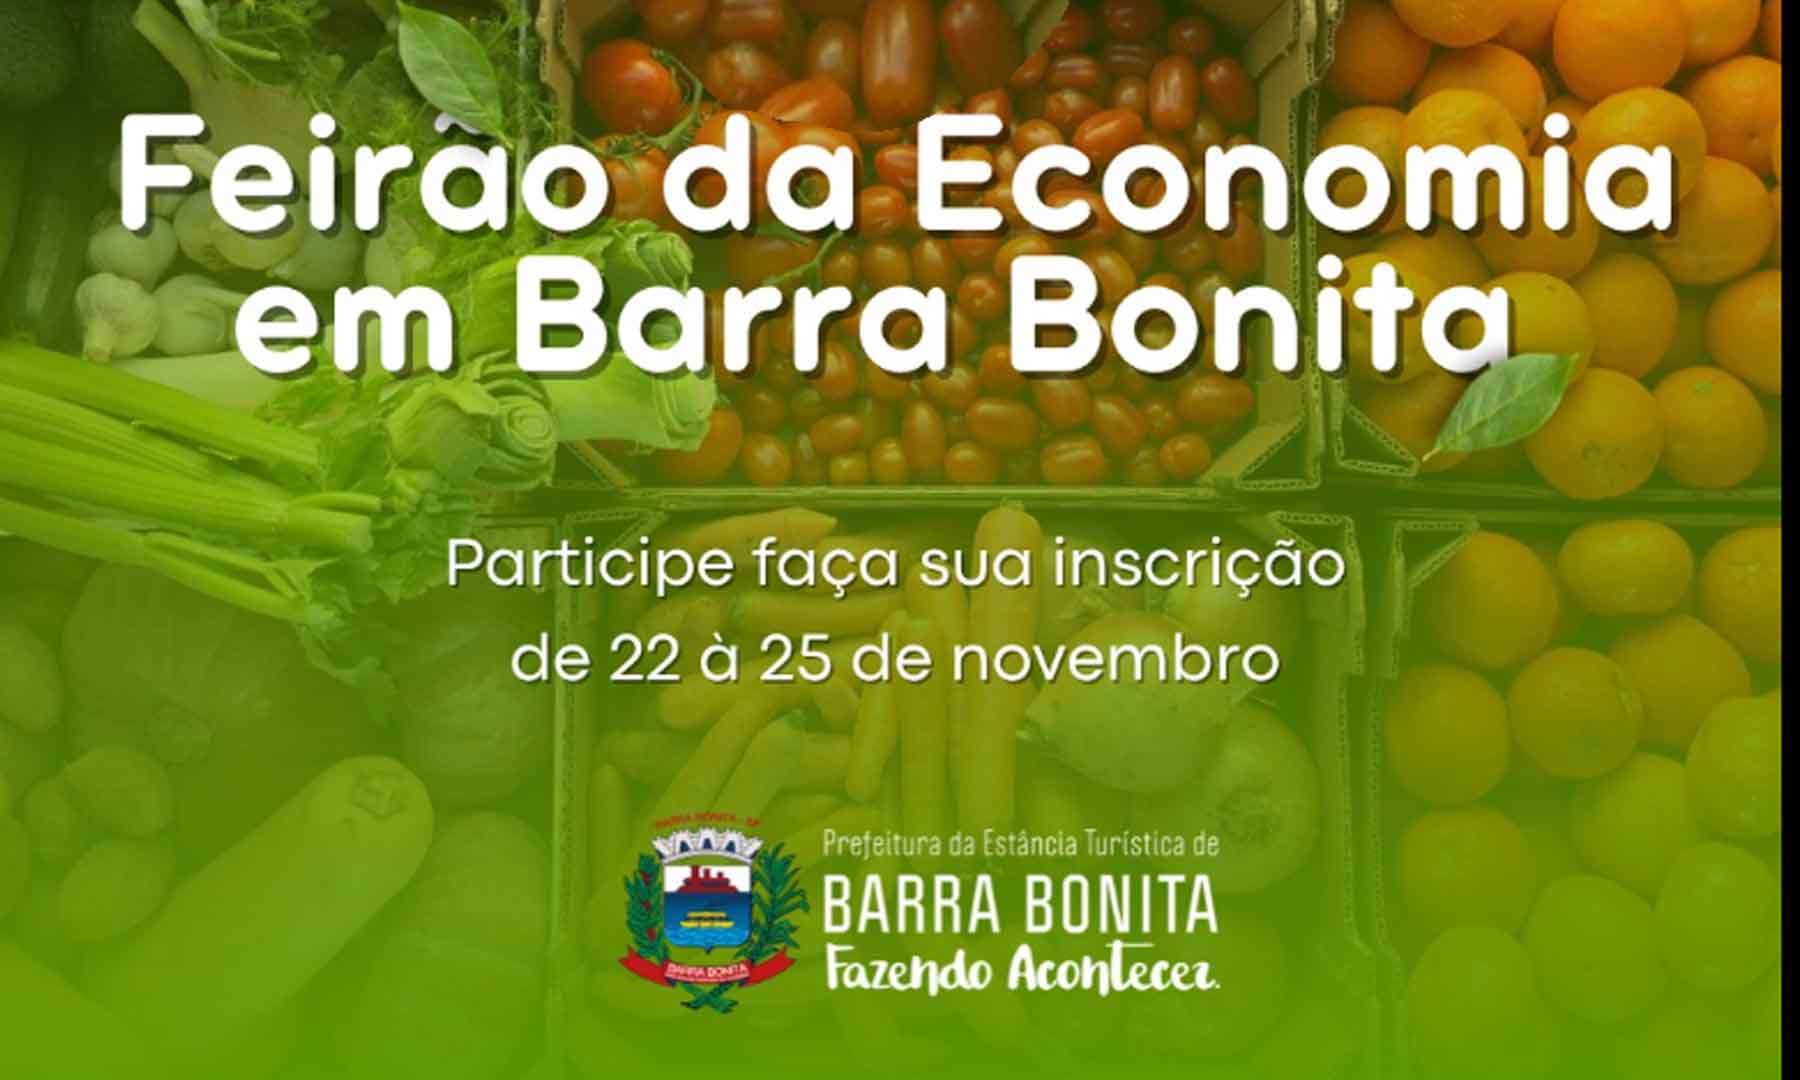 INSCRIÇÕES ABERTAS PARA O FEIRÃO DA ECONOMIA EM BARRA BONITA